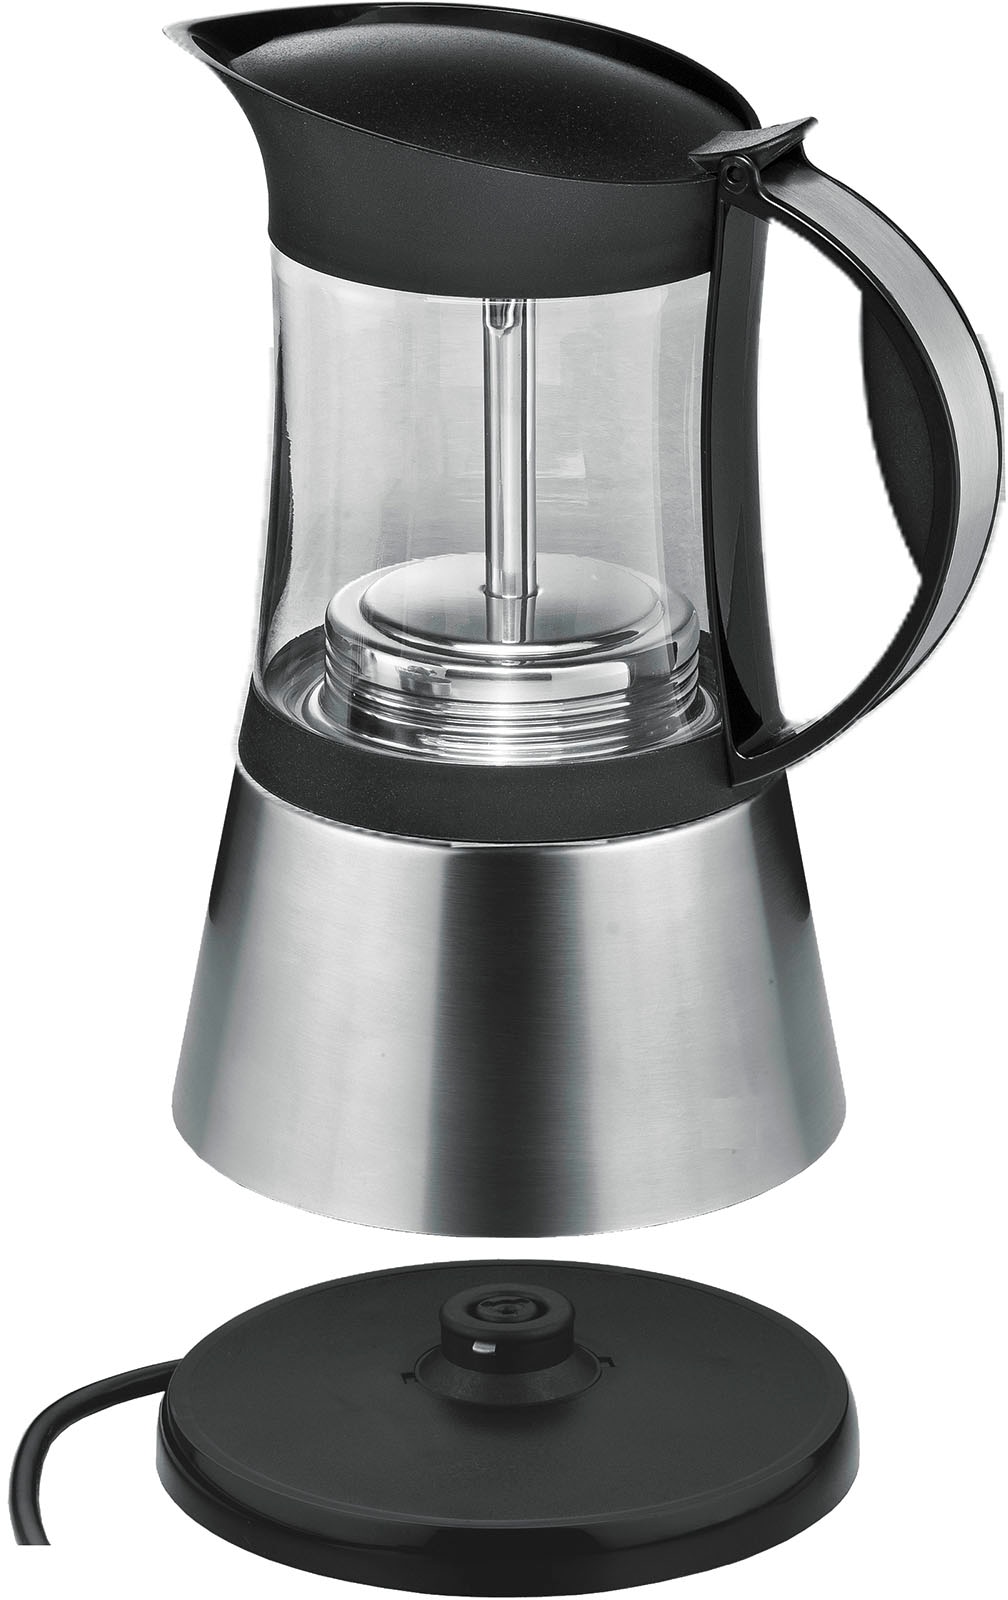 Rommelsbacher Espressokocher »EKO 376/G«, 0,35 l Kaffeekanne, aus hitzebeständigem Glas